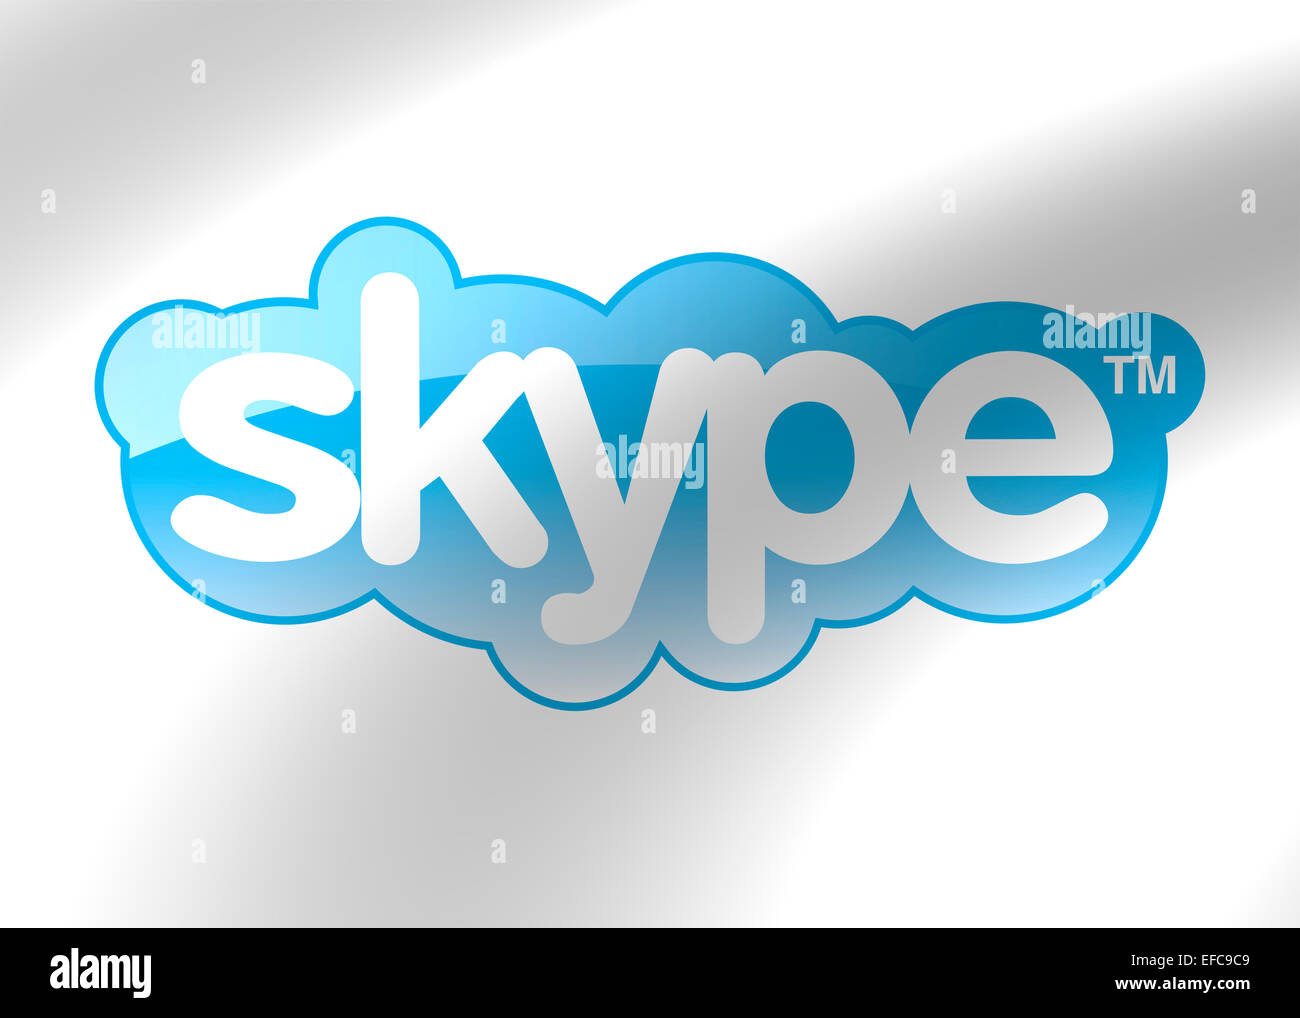 Skype logo icon symbol emblem flag Stock Photo